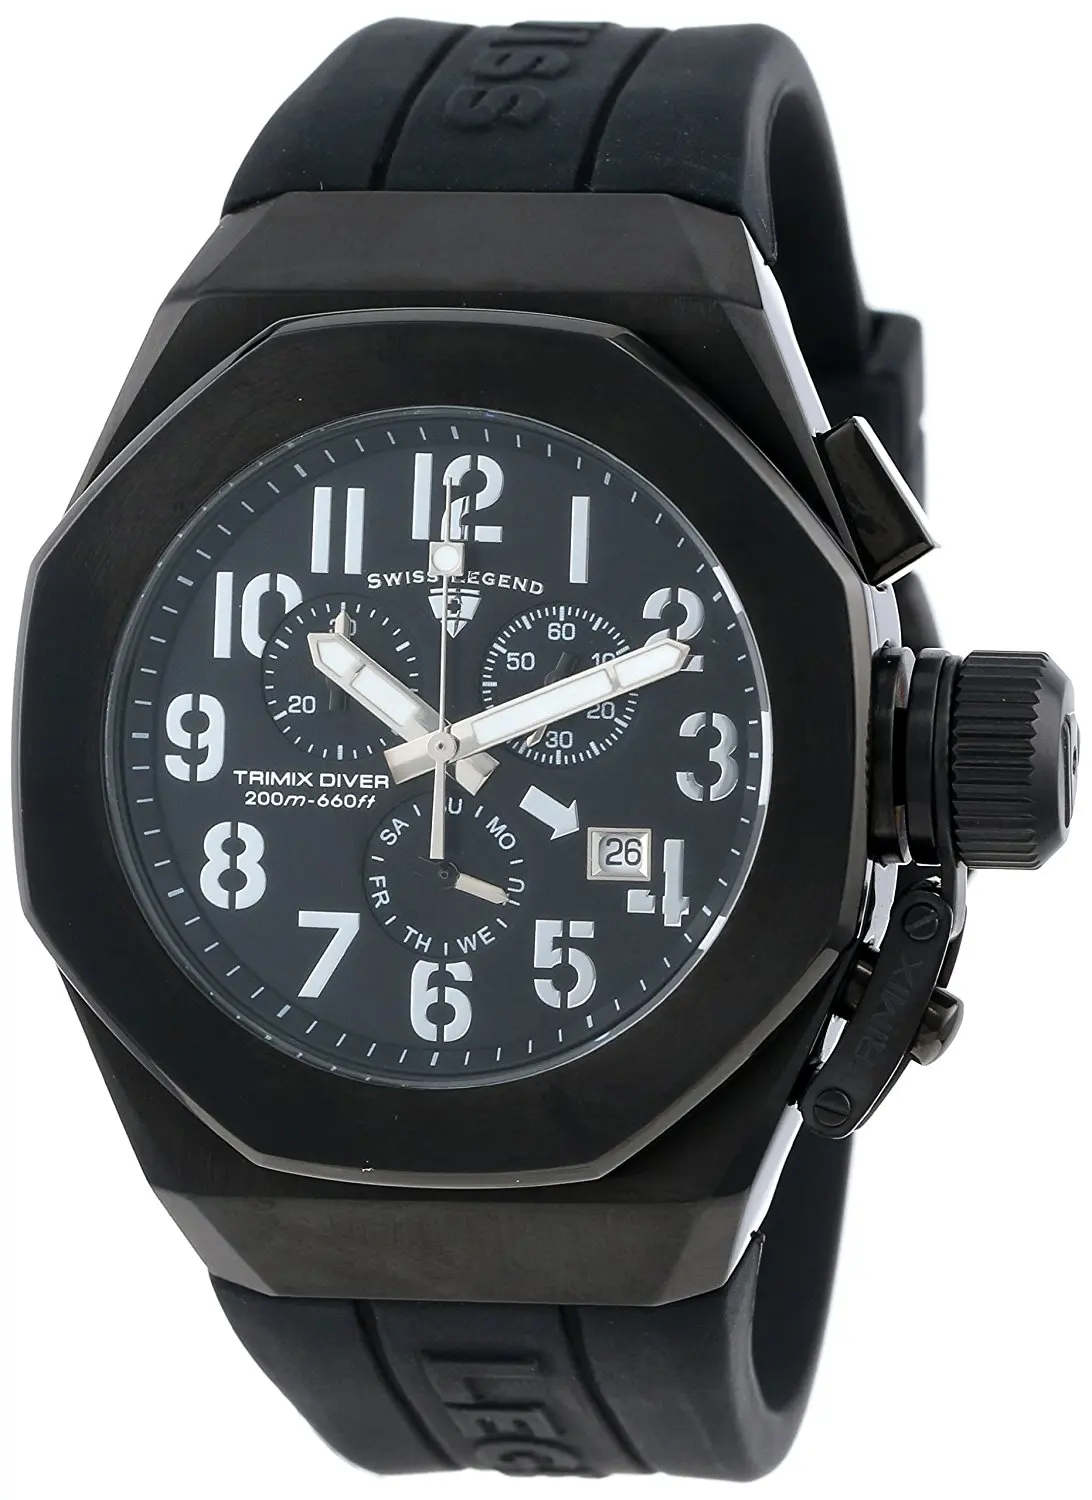 Cheap Swiss Legend Watch Band, find Swiss Legend Watch Band deals on ...